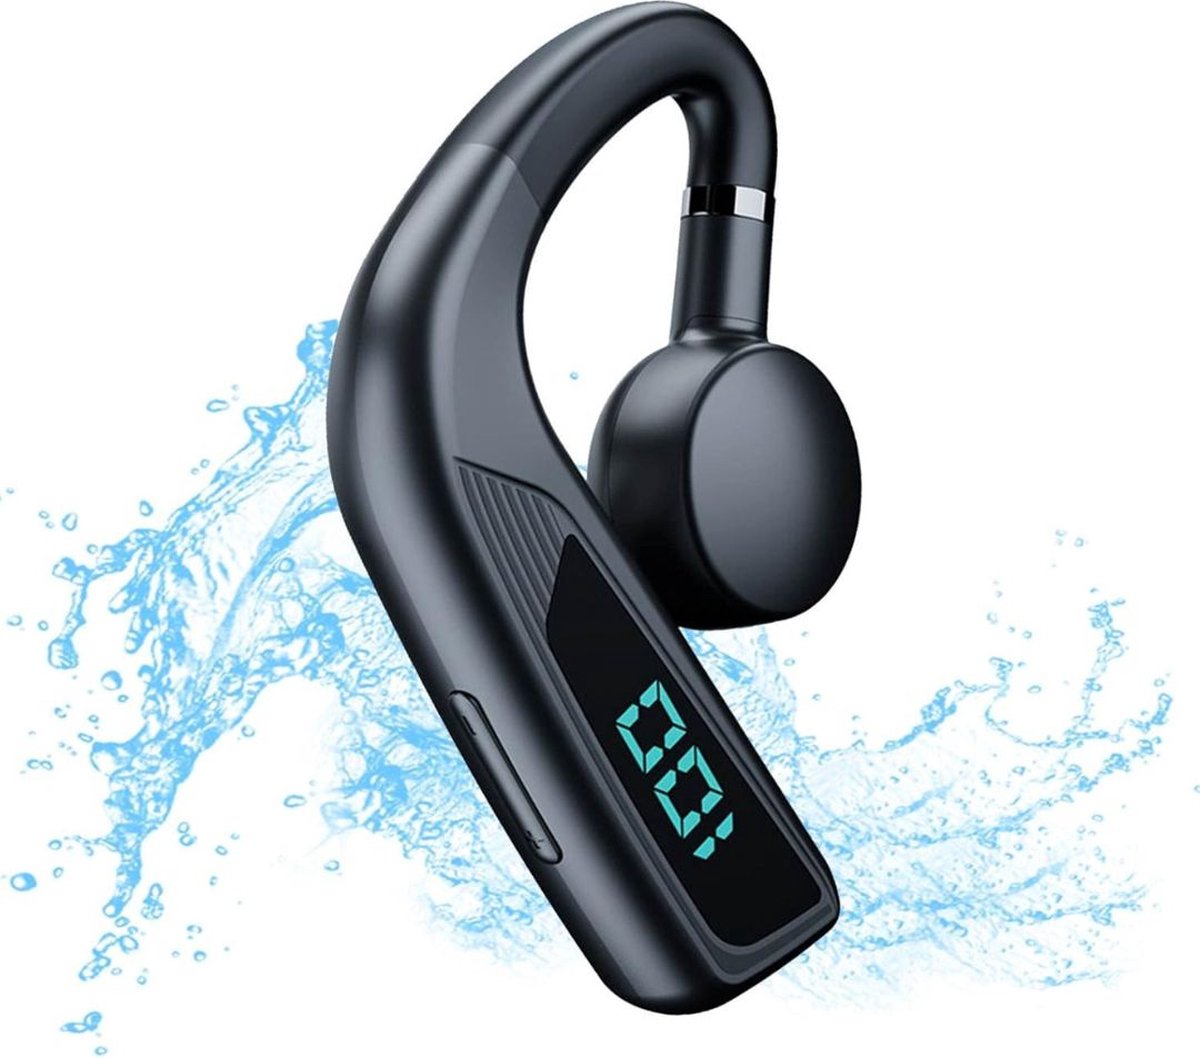 Bone Conduction Headphone - Sporthoofdtelefoon 30 Uur Speeltijd - Draadloze Oordopje Bluetooth - Sport Hardloop Koptelefoon - Ideaal voor Sport & Outdoor